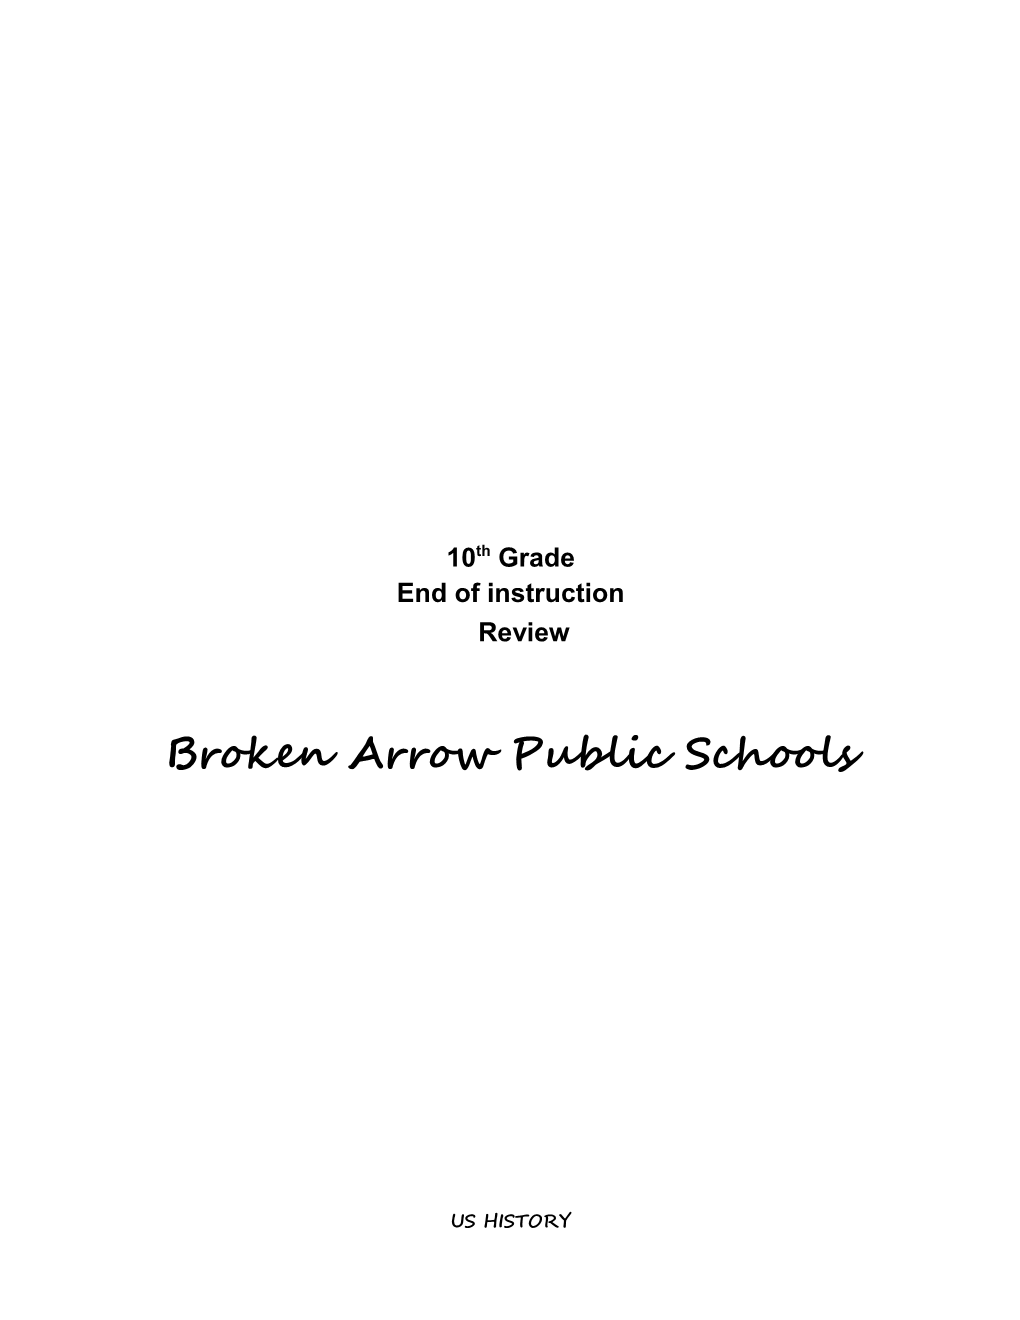 Broken Arrow Public Schools